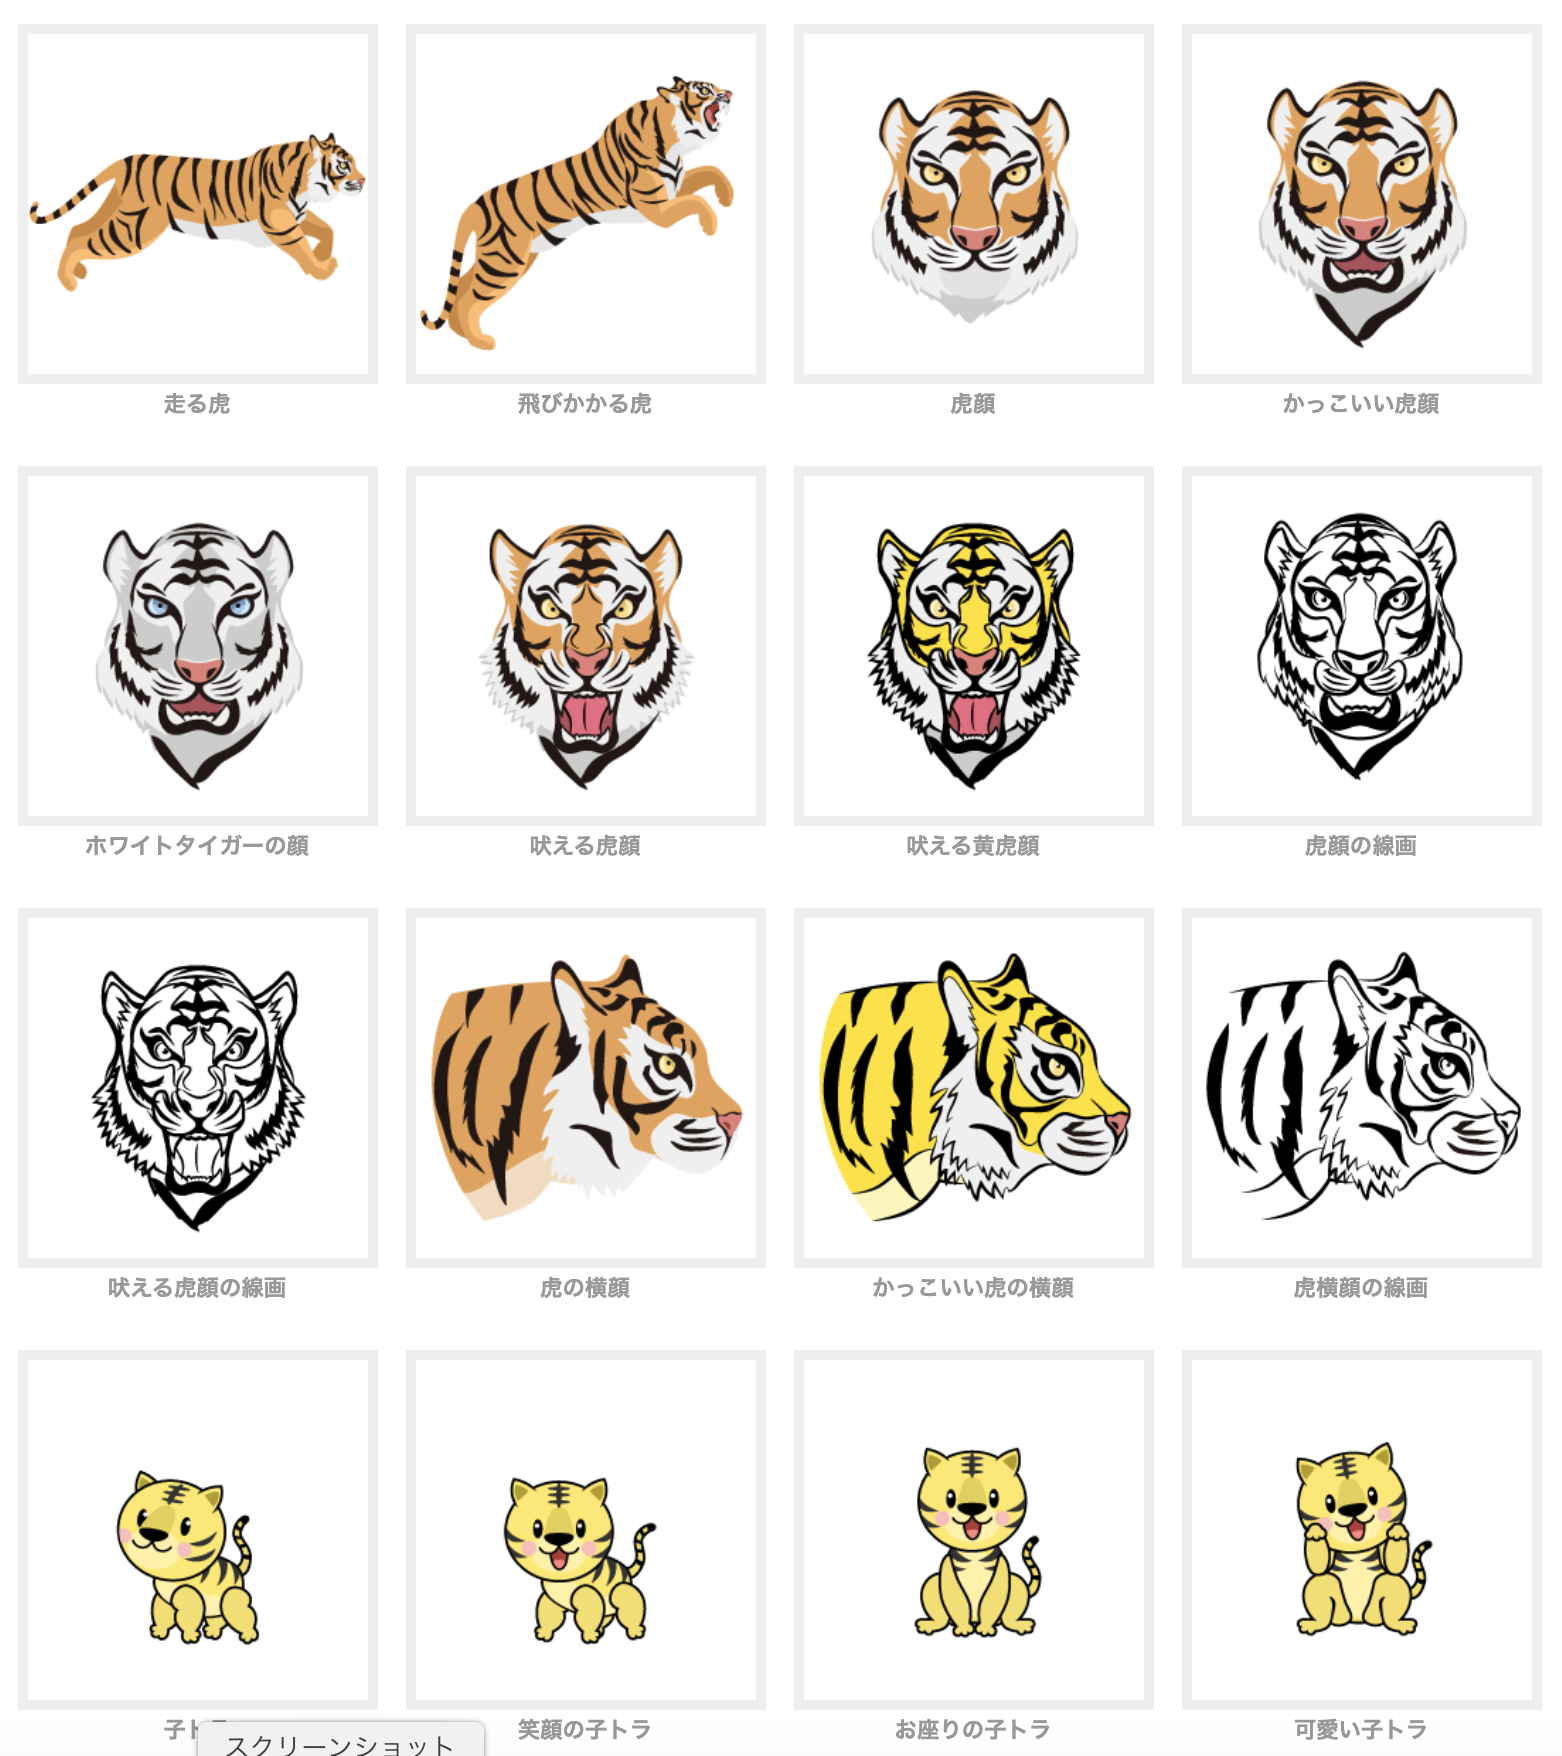 虎の無料イラスト素材集 Dak デザイン アバター イラスト 楽天ブログ